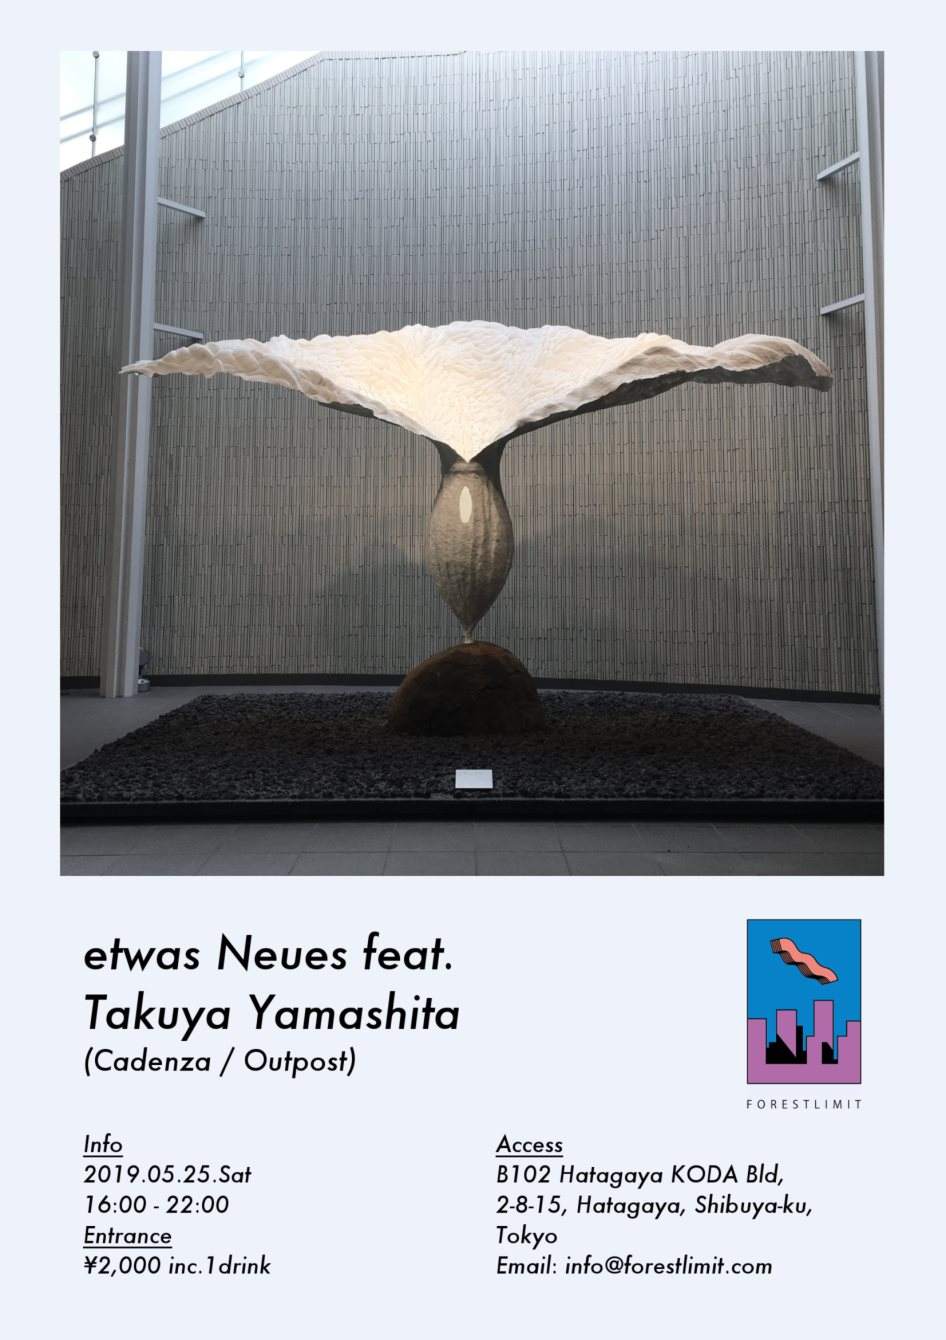 Etwas Neues Feat. Takuya Yamashita - フライヤー表